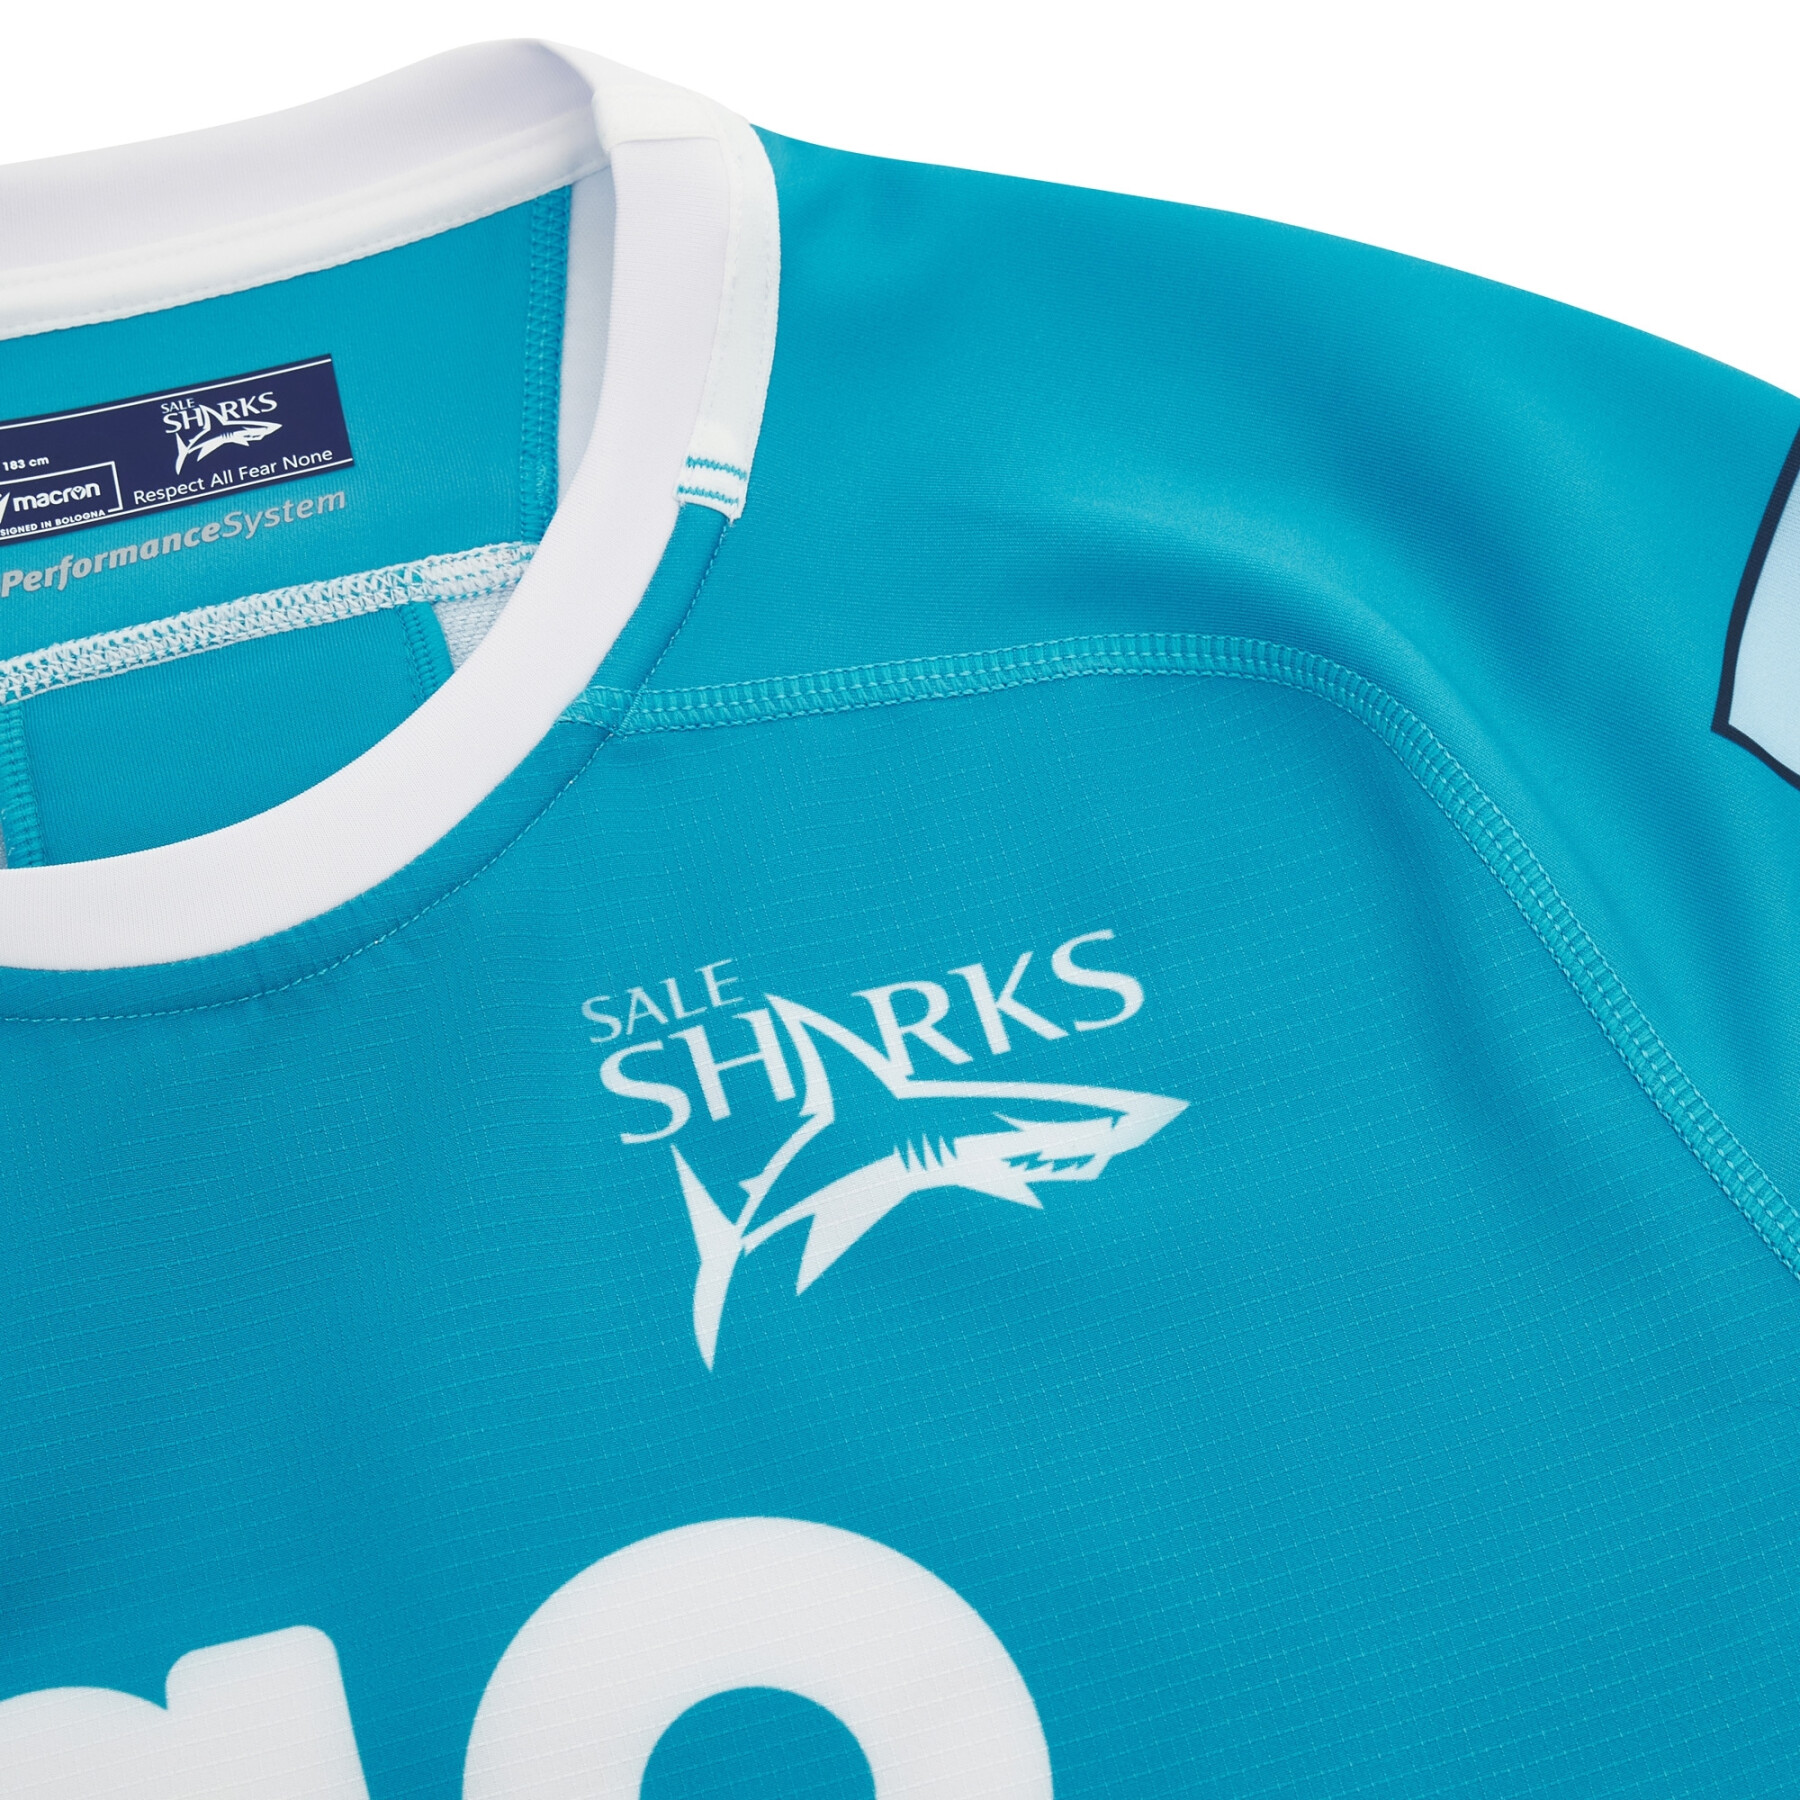 Away jersey Sale Sharks Pro tech 2023/24